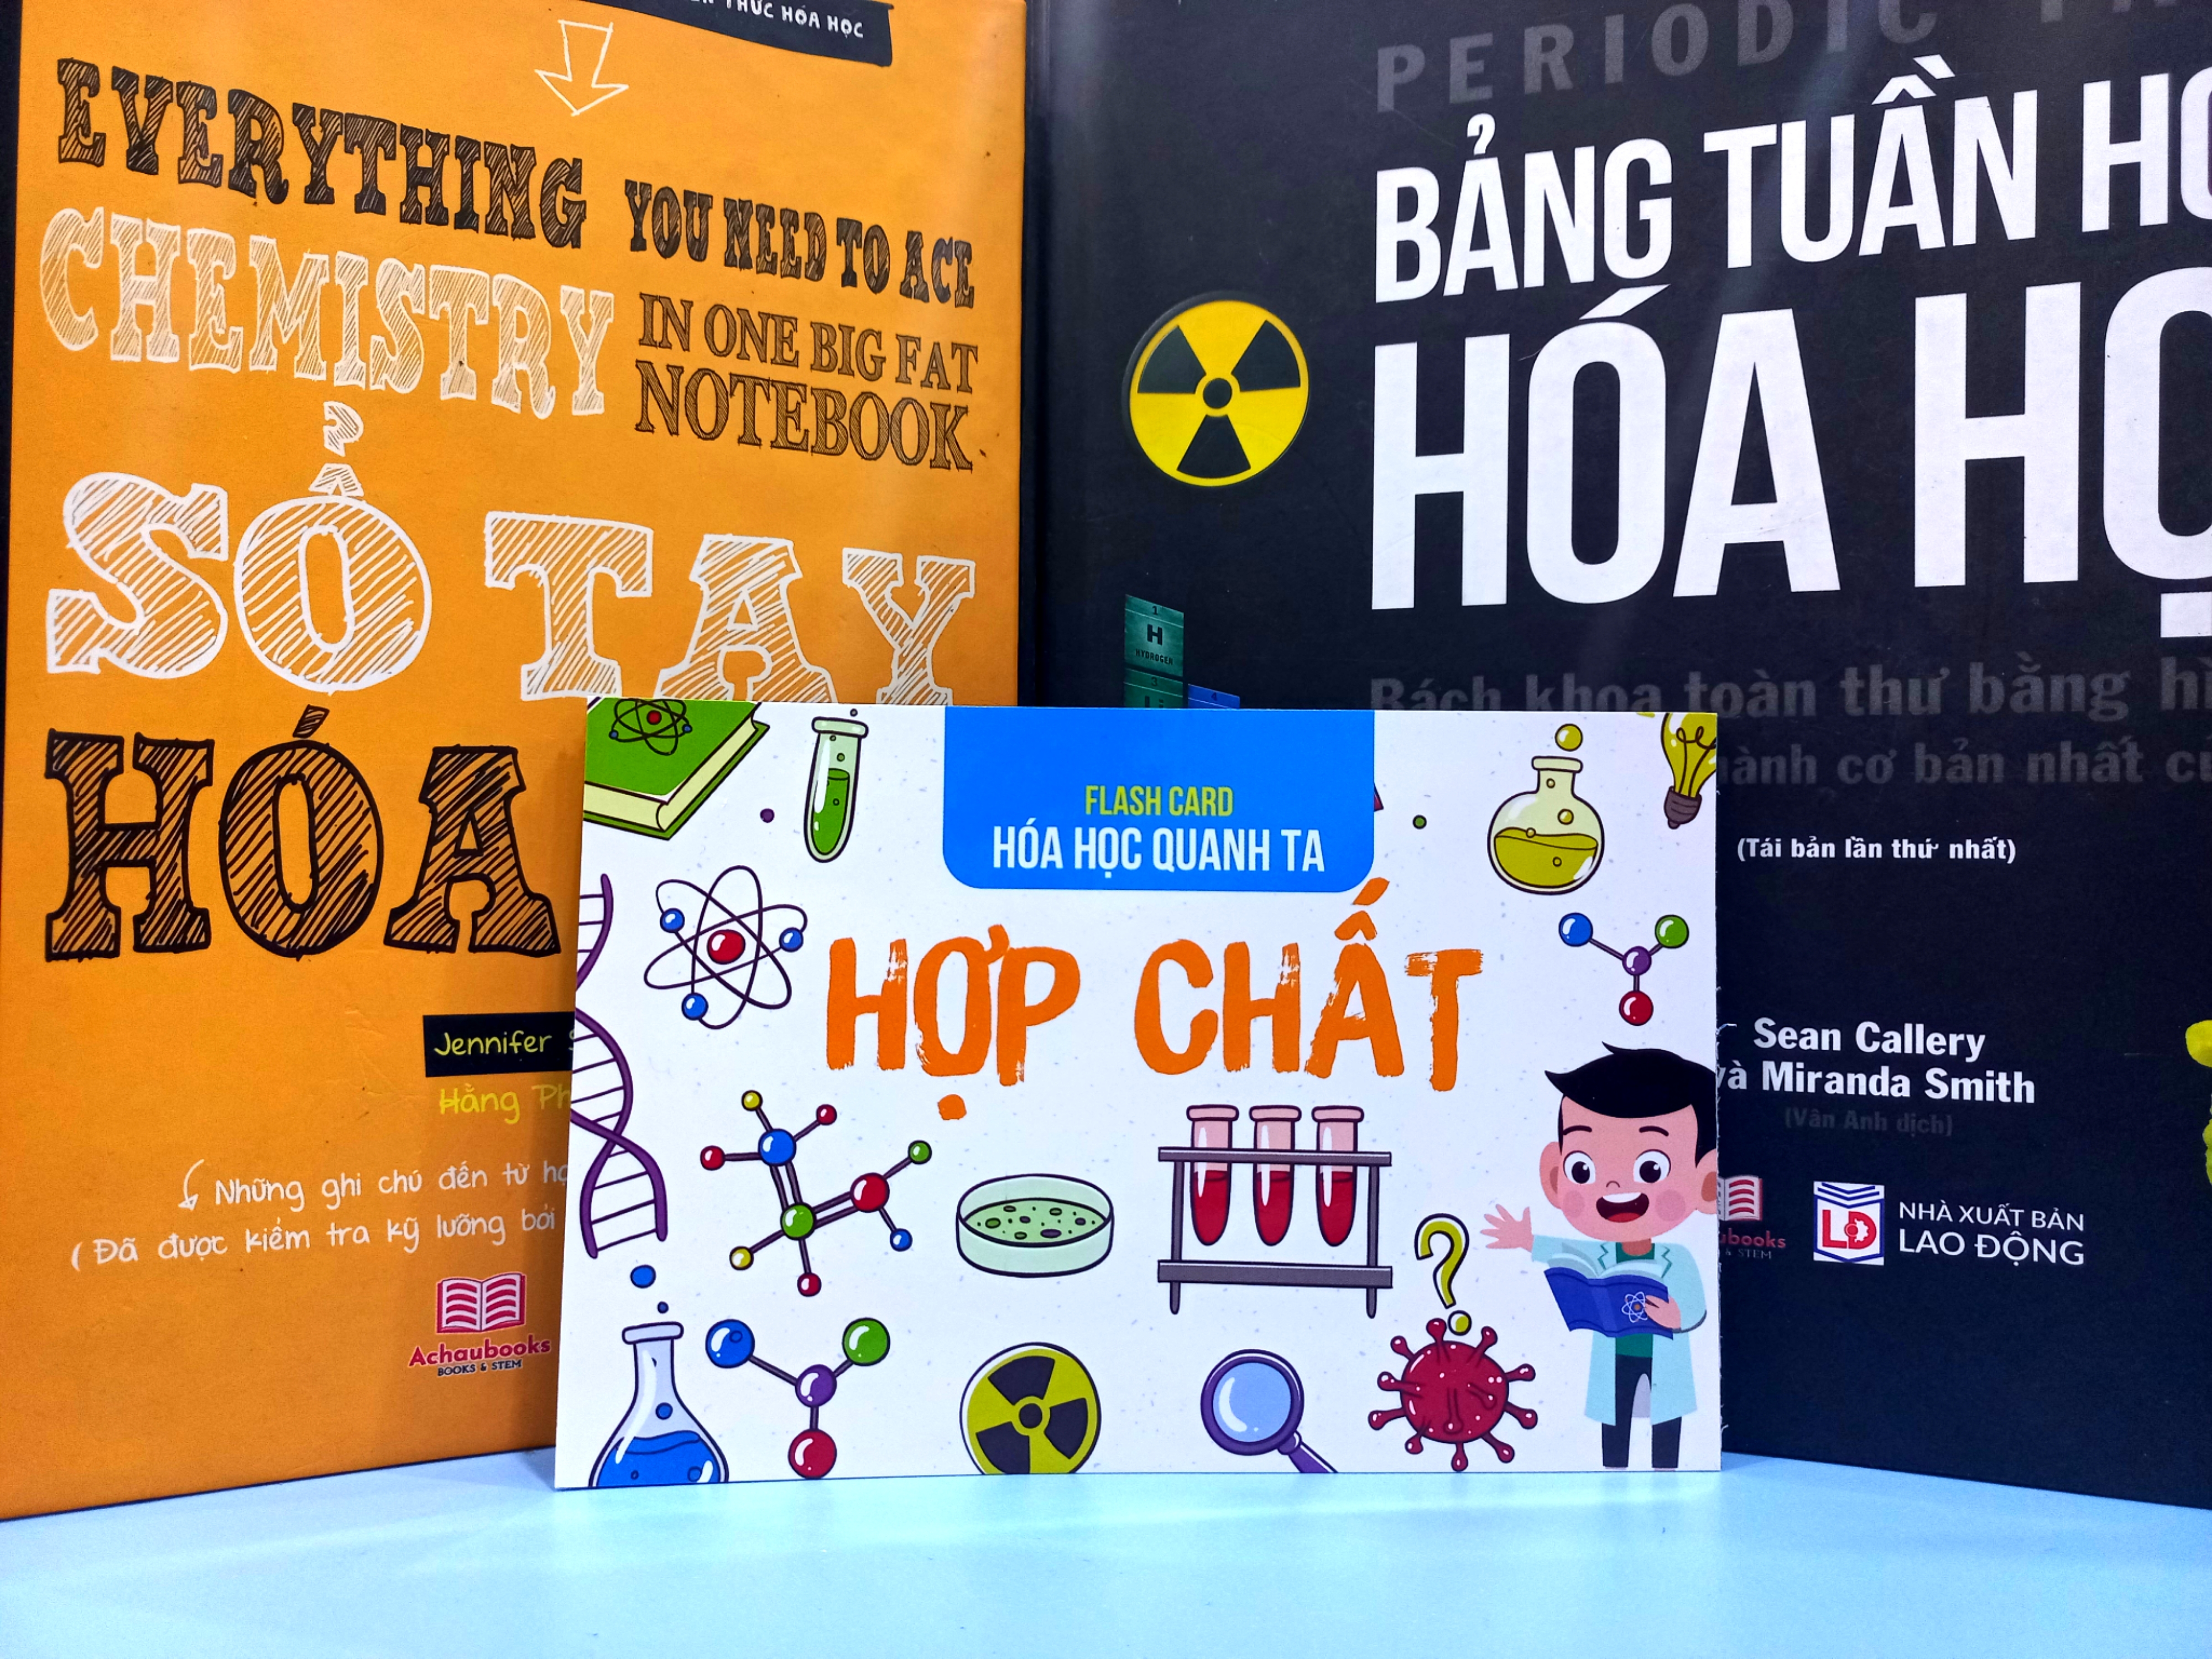 FLASH CARD HỢP CHẤT HÓA HỌC - Á Châu Books